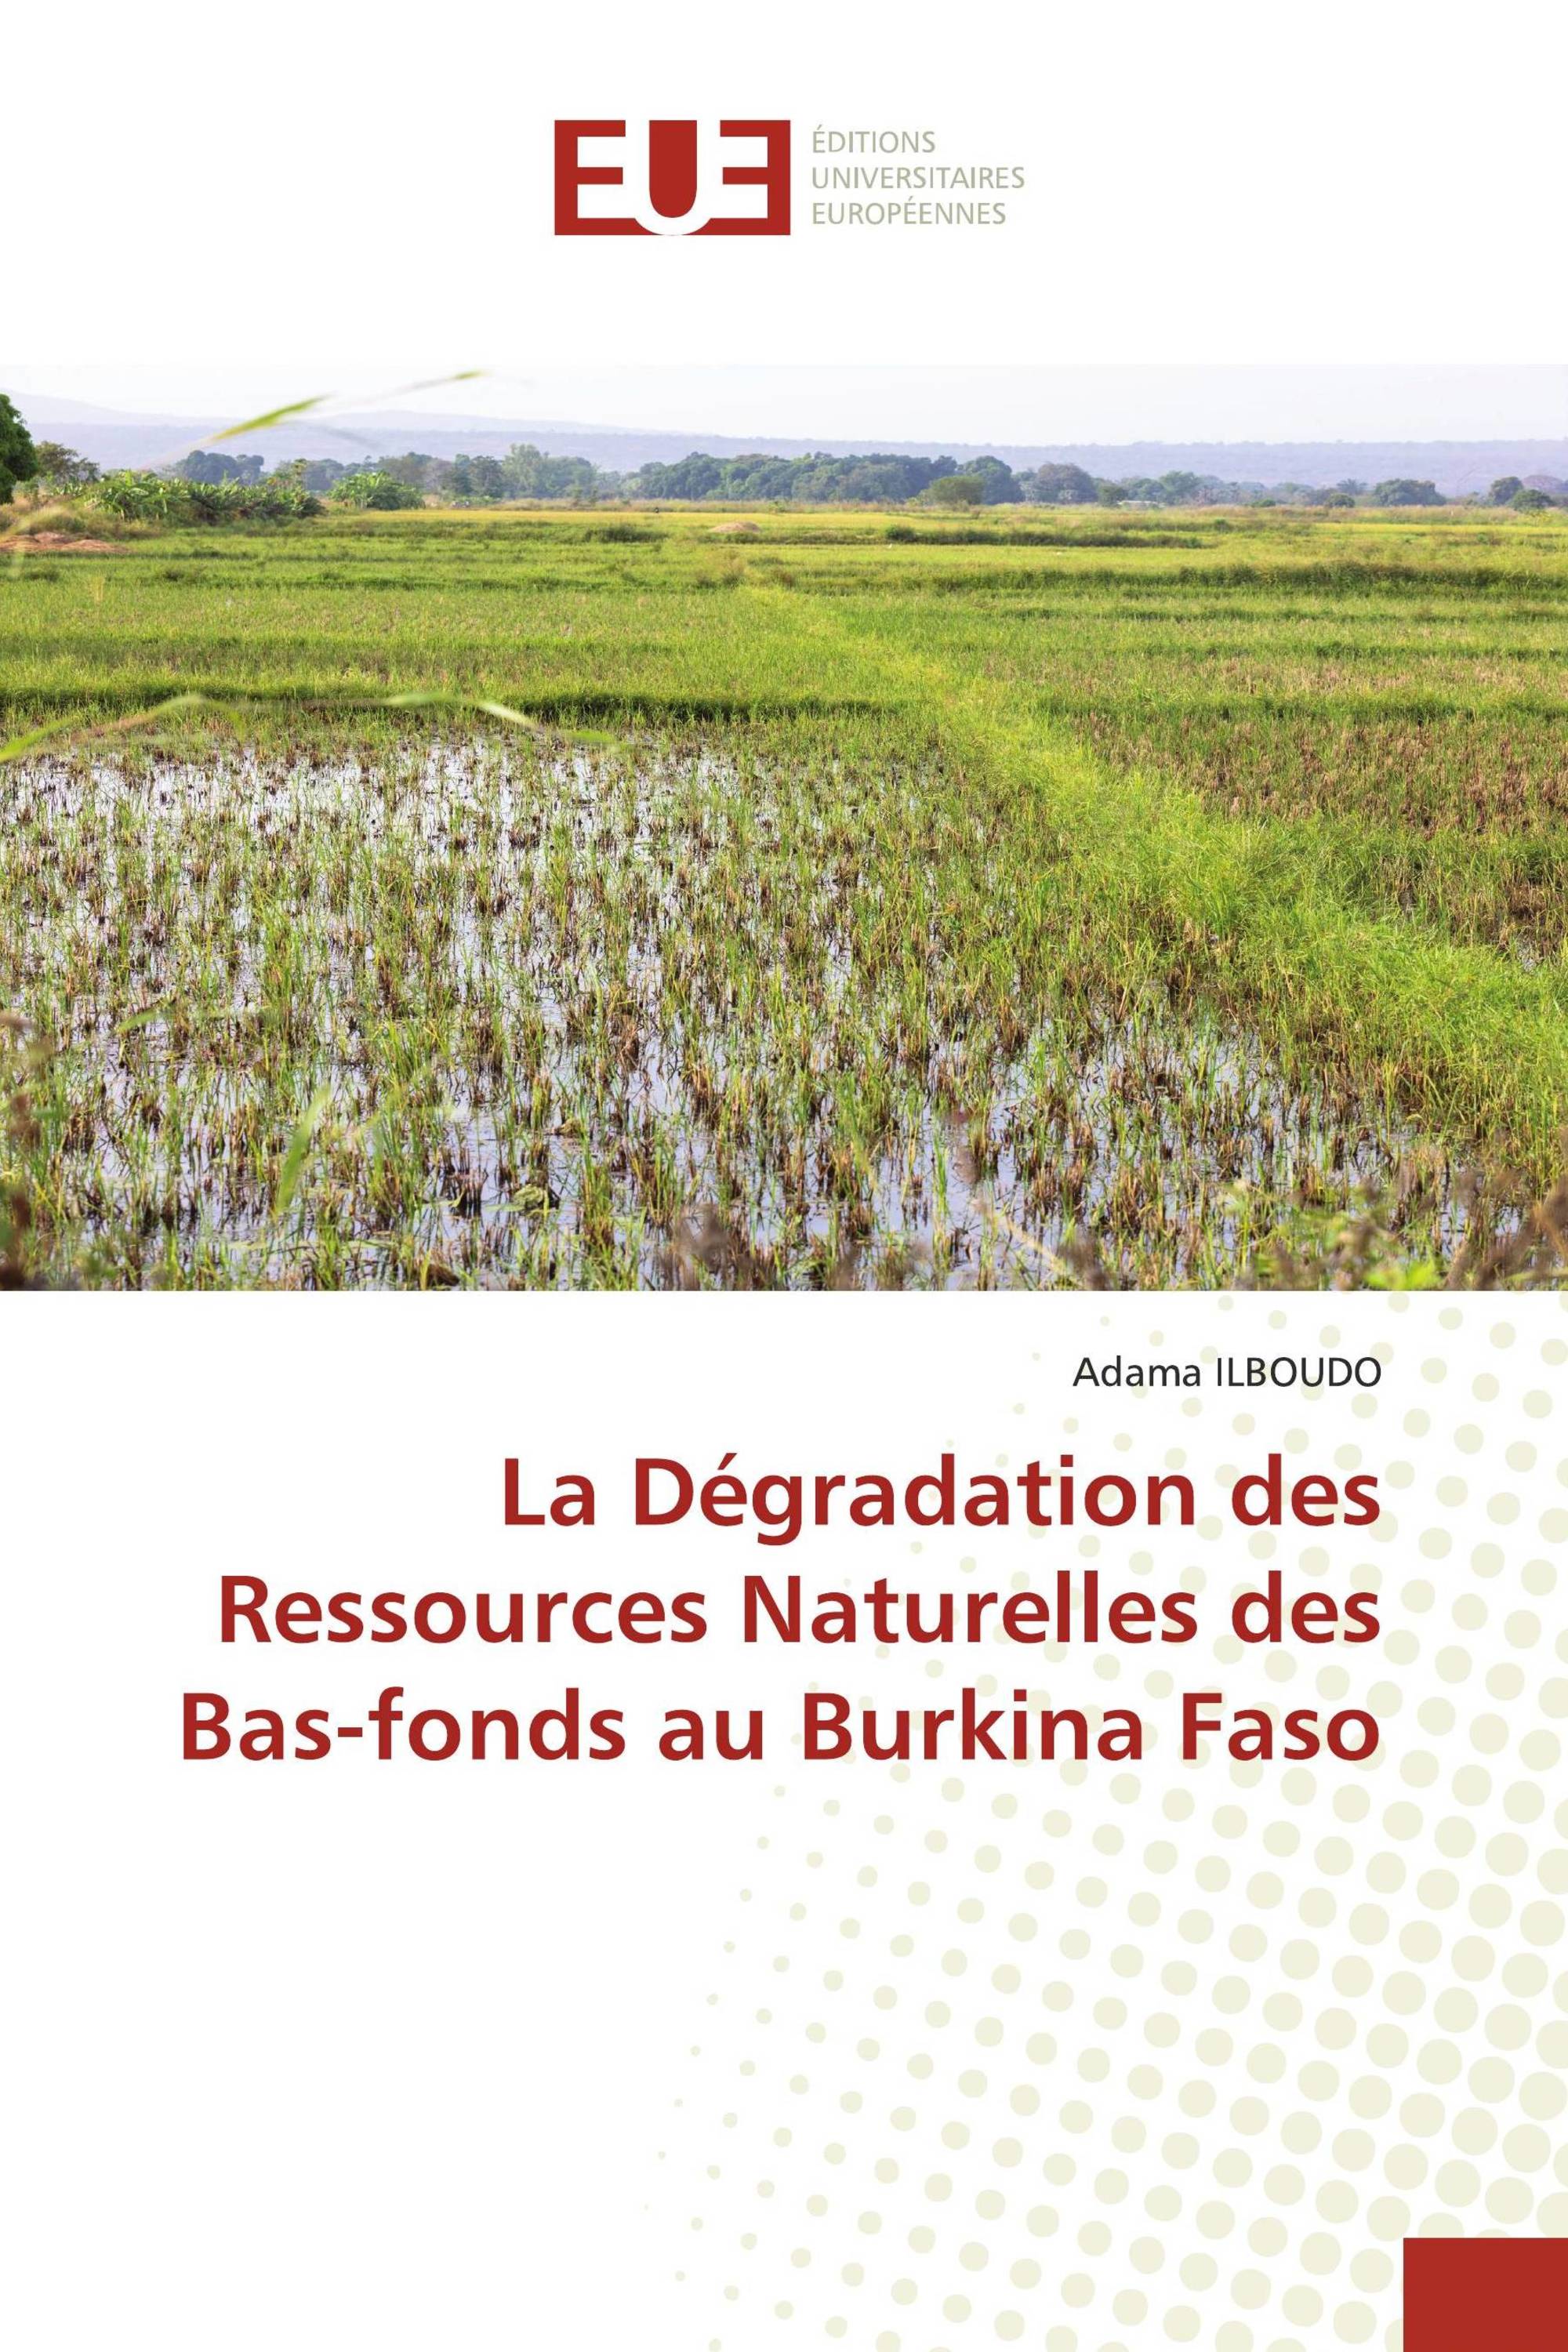 La Dégradation des Ressources Naturelles des Bas-fonds au Burkina Faso